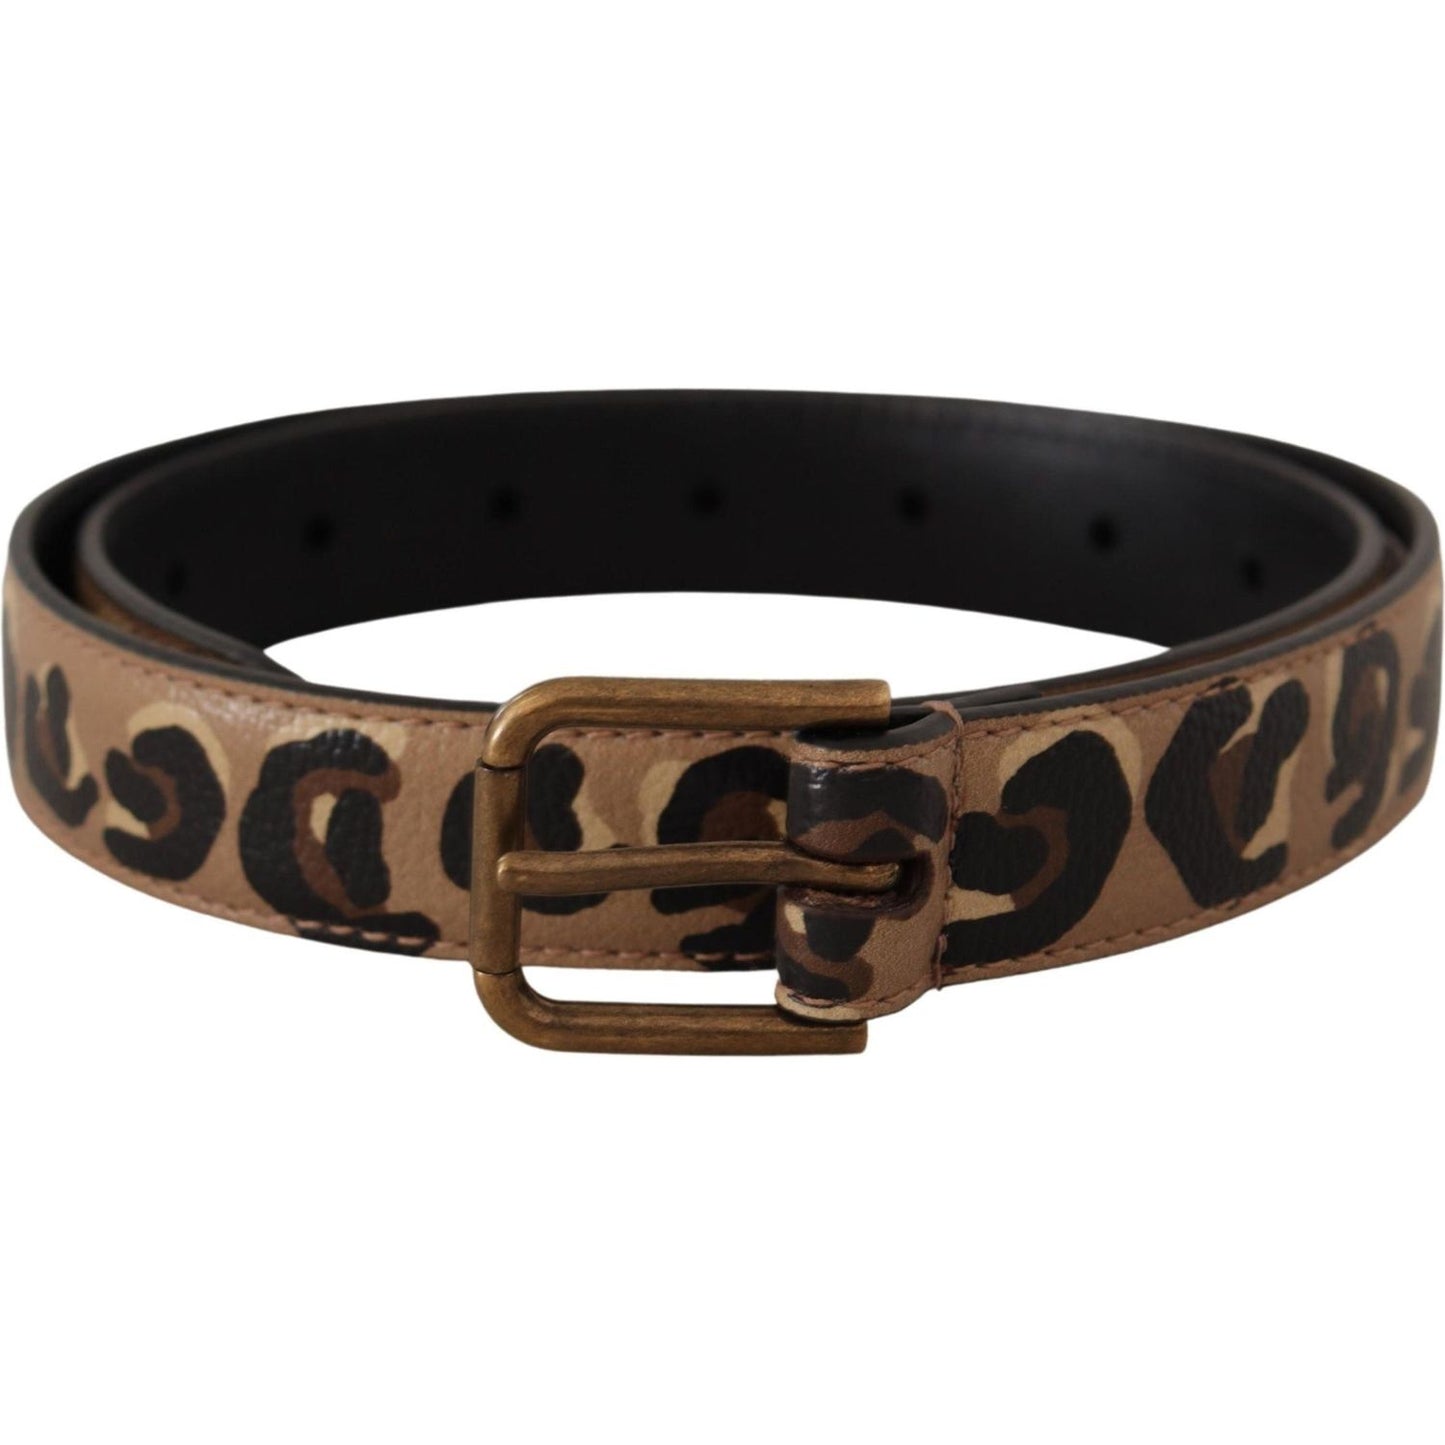 Dolce & Gabbana Elegant Leather Engraved Buckle Belt brown-leopard-print-vintage-metal-waist-buckle-belt